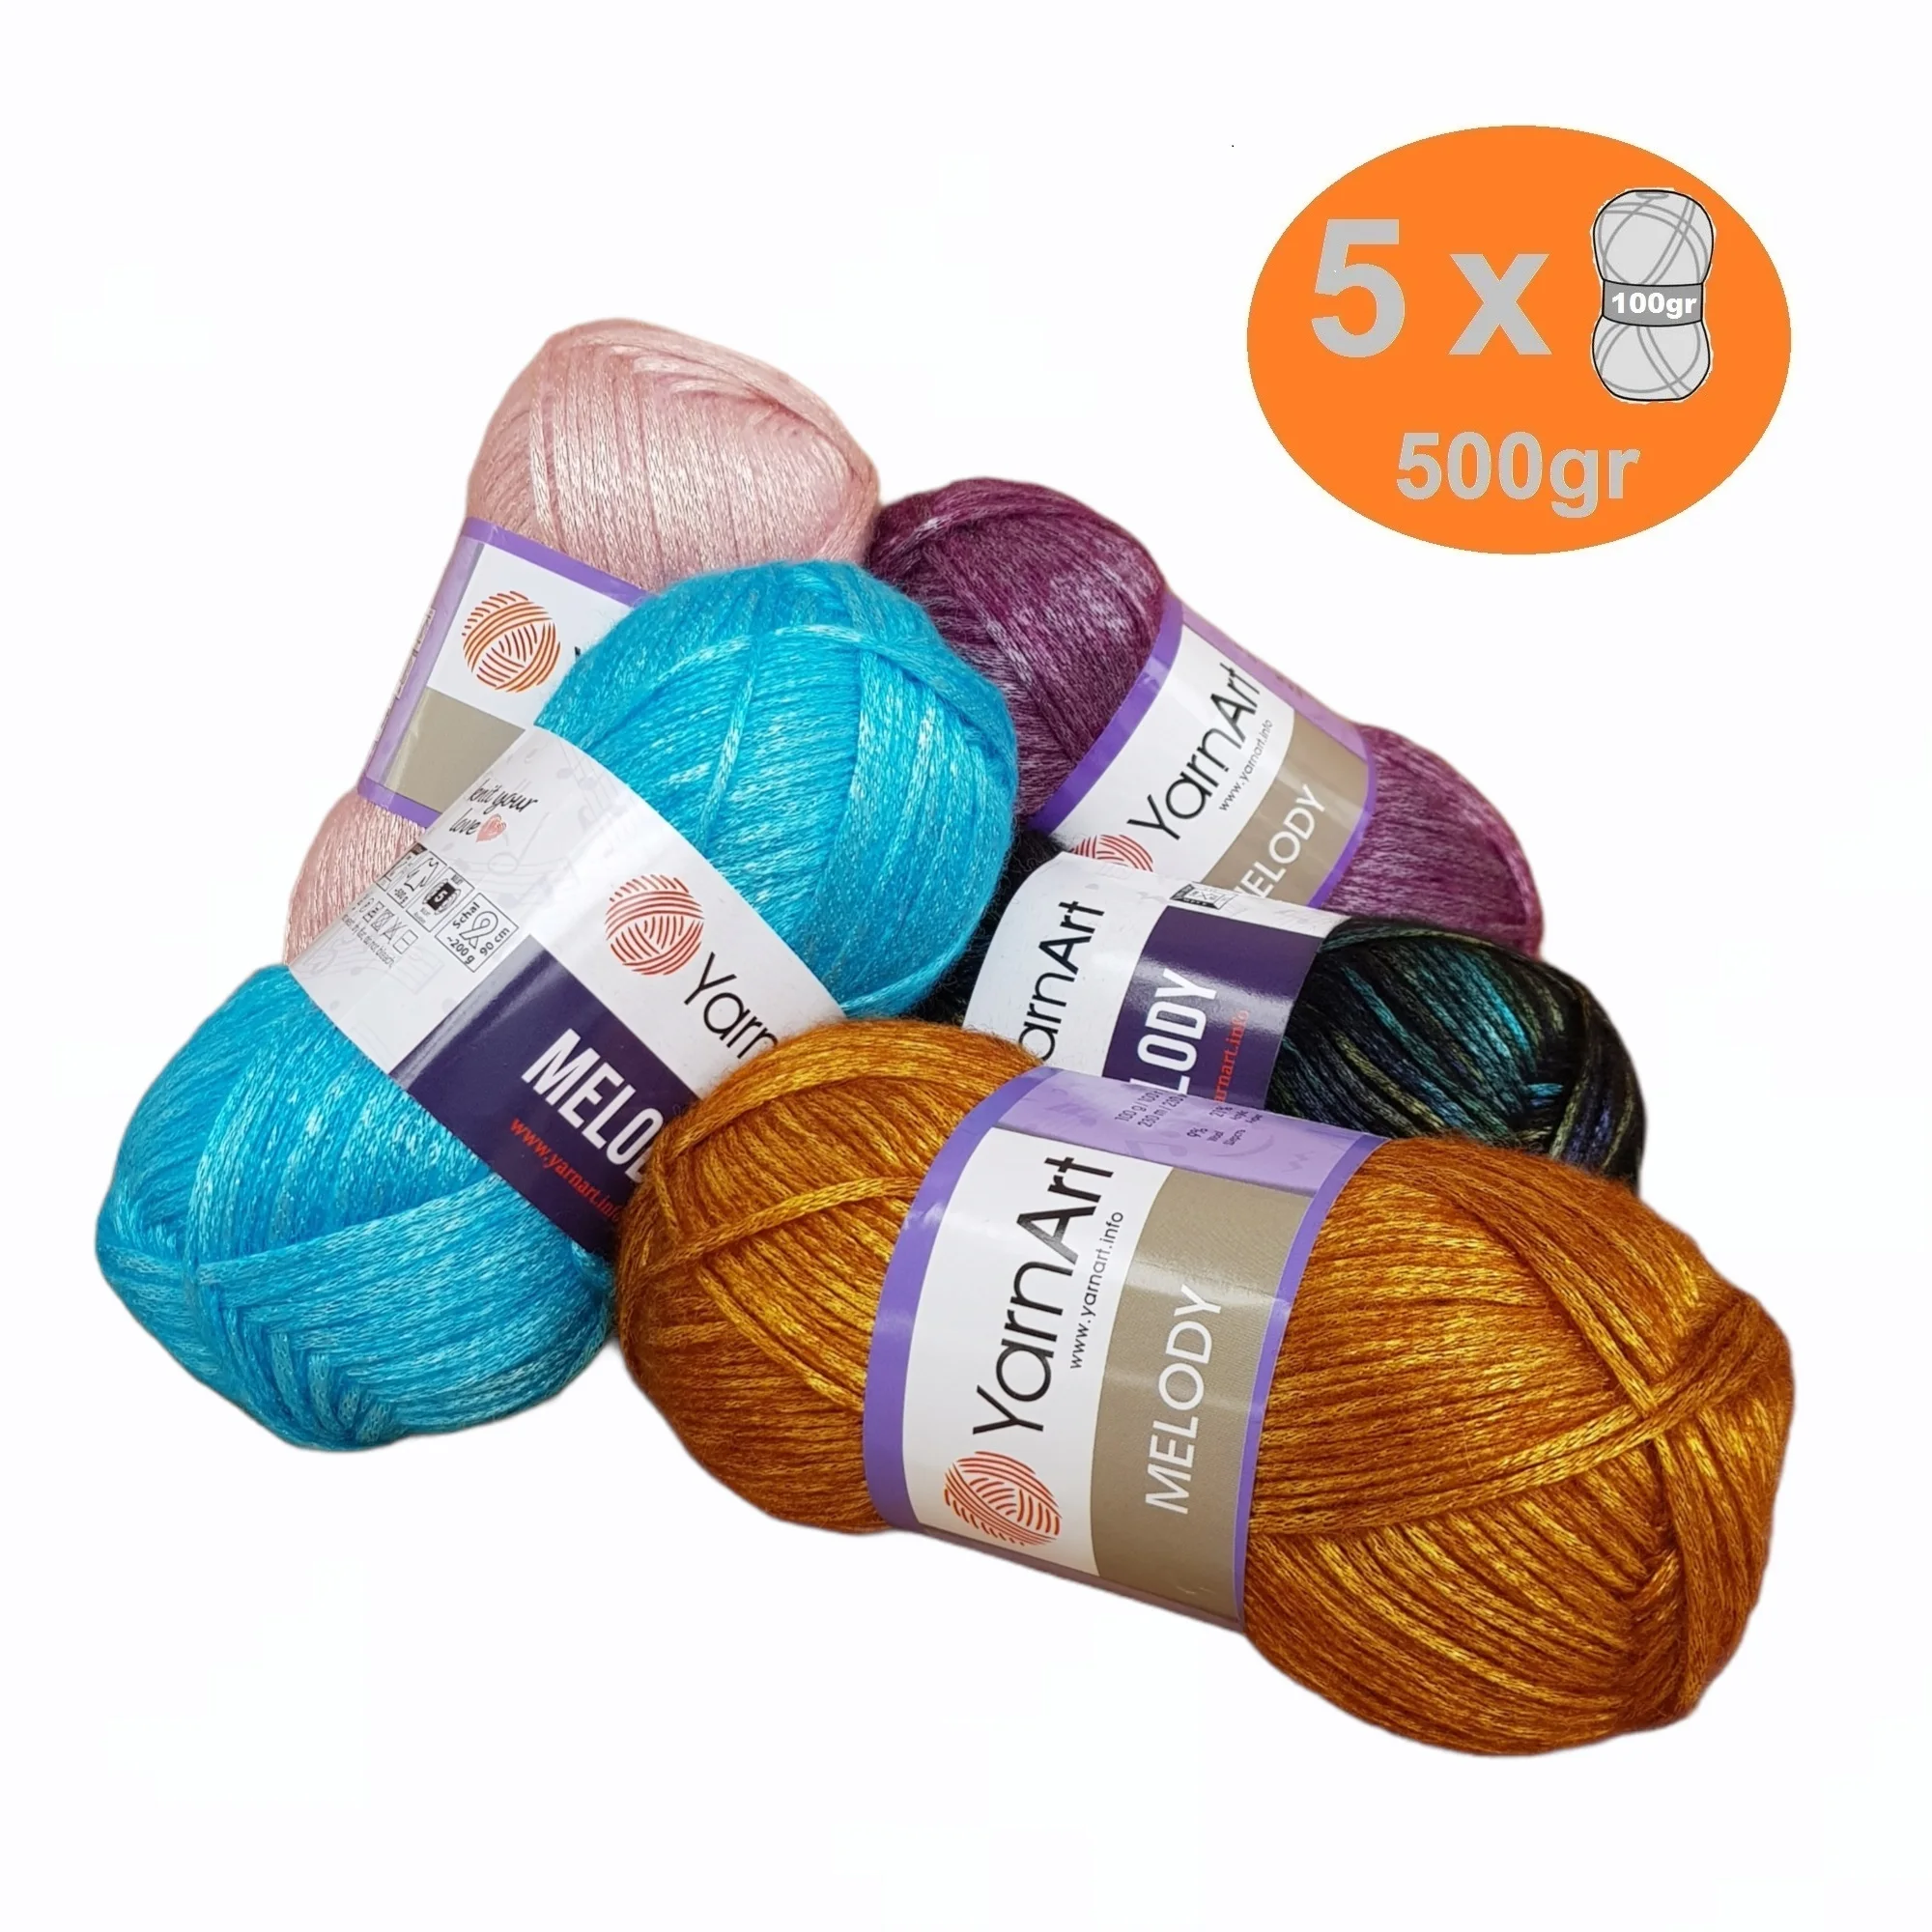 Yarnart Melody Yarn Knitting Crochet 5x100gr-230mt %9 Wool - %21 Acrylic Wrap Beanie Sweater Kids Adults Knitwears Silky Shiny